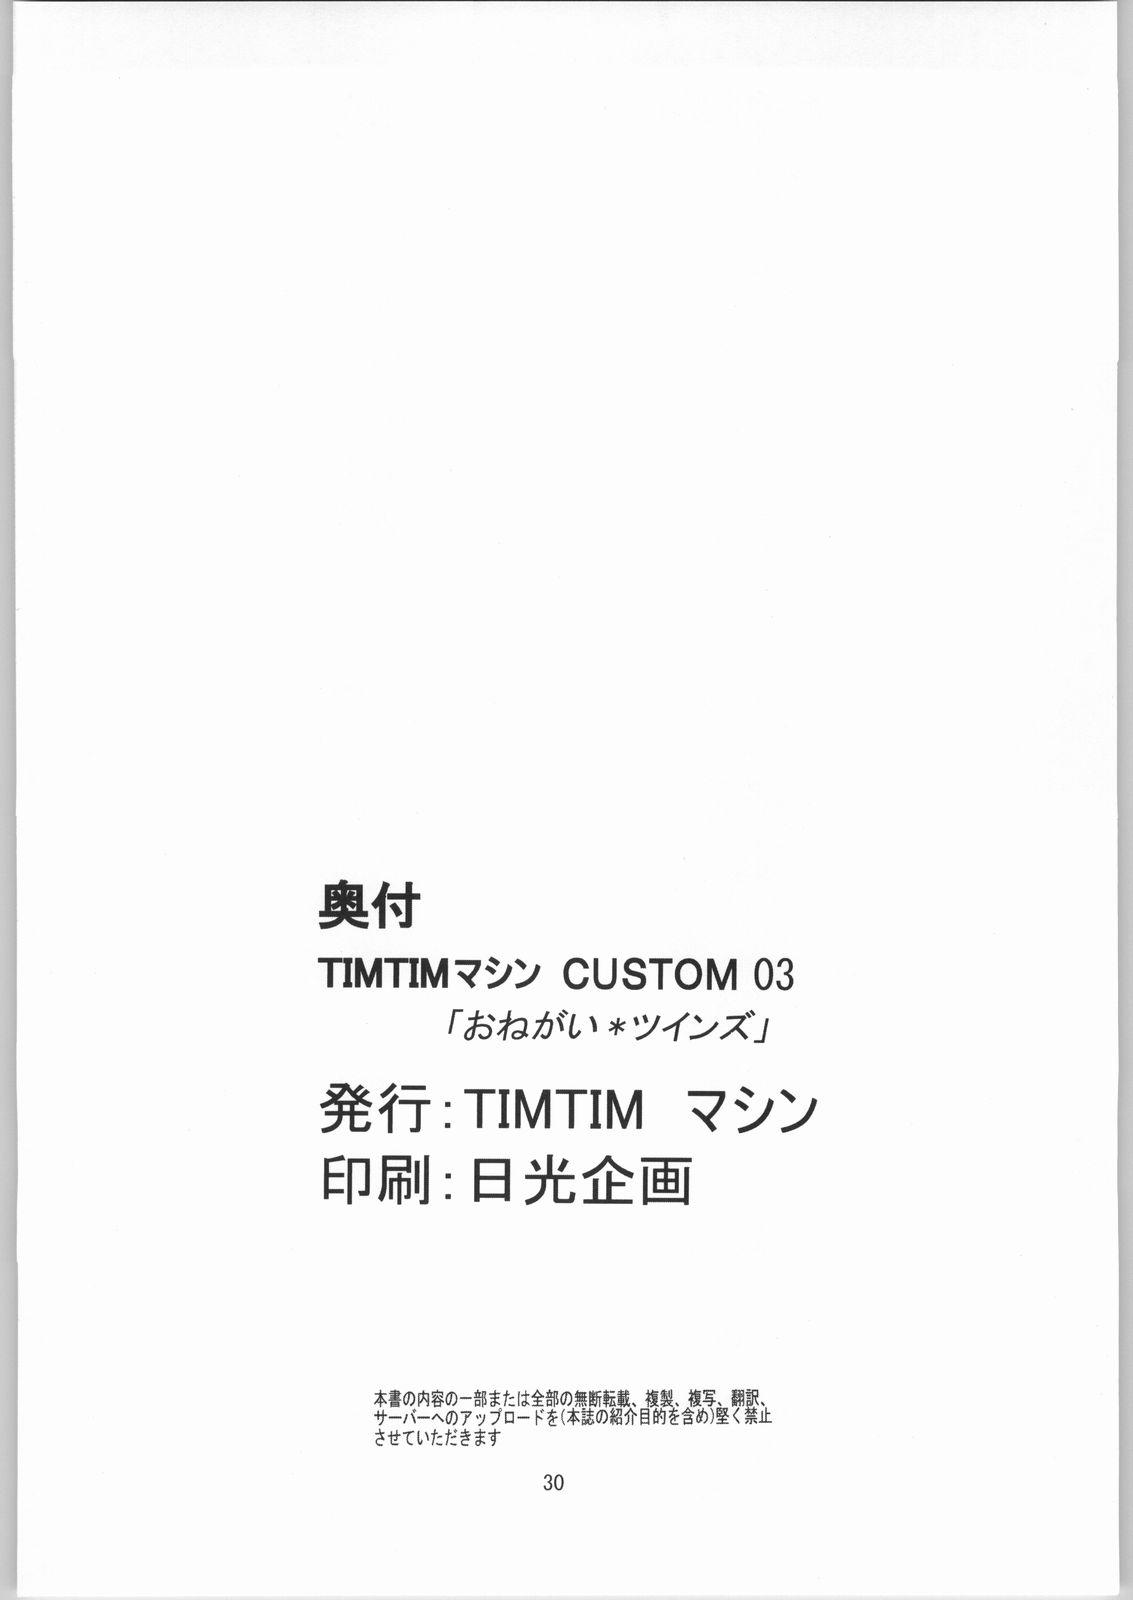 TIMTIM Machine Custom 03 28